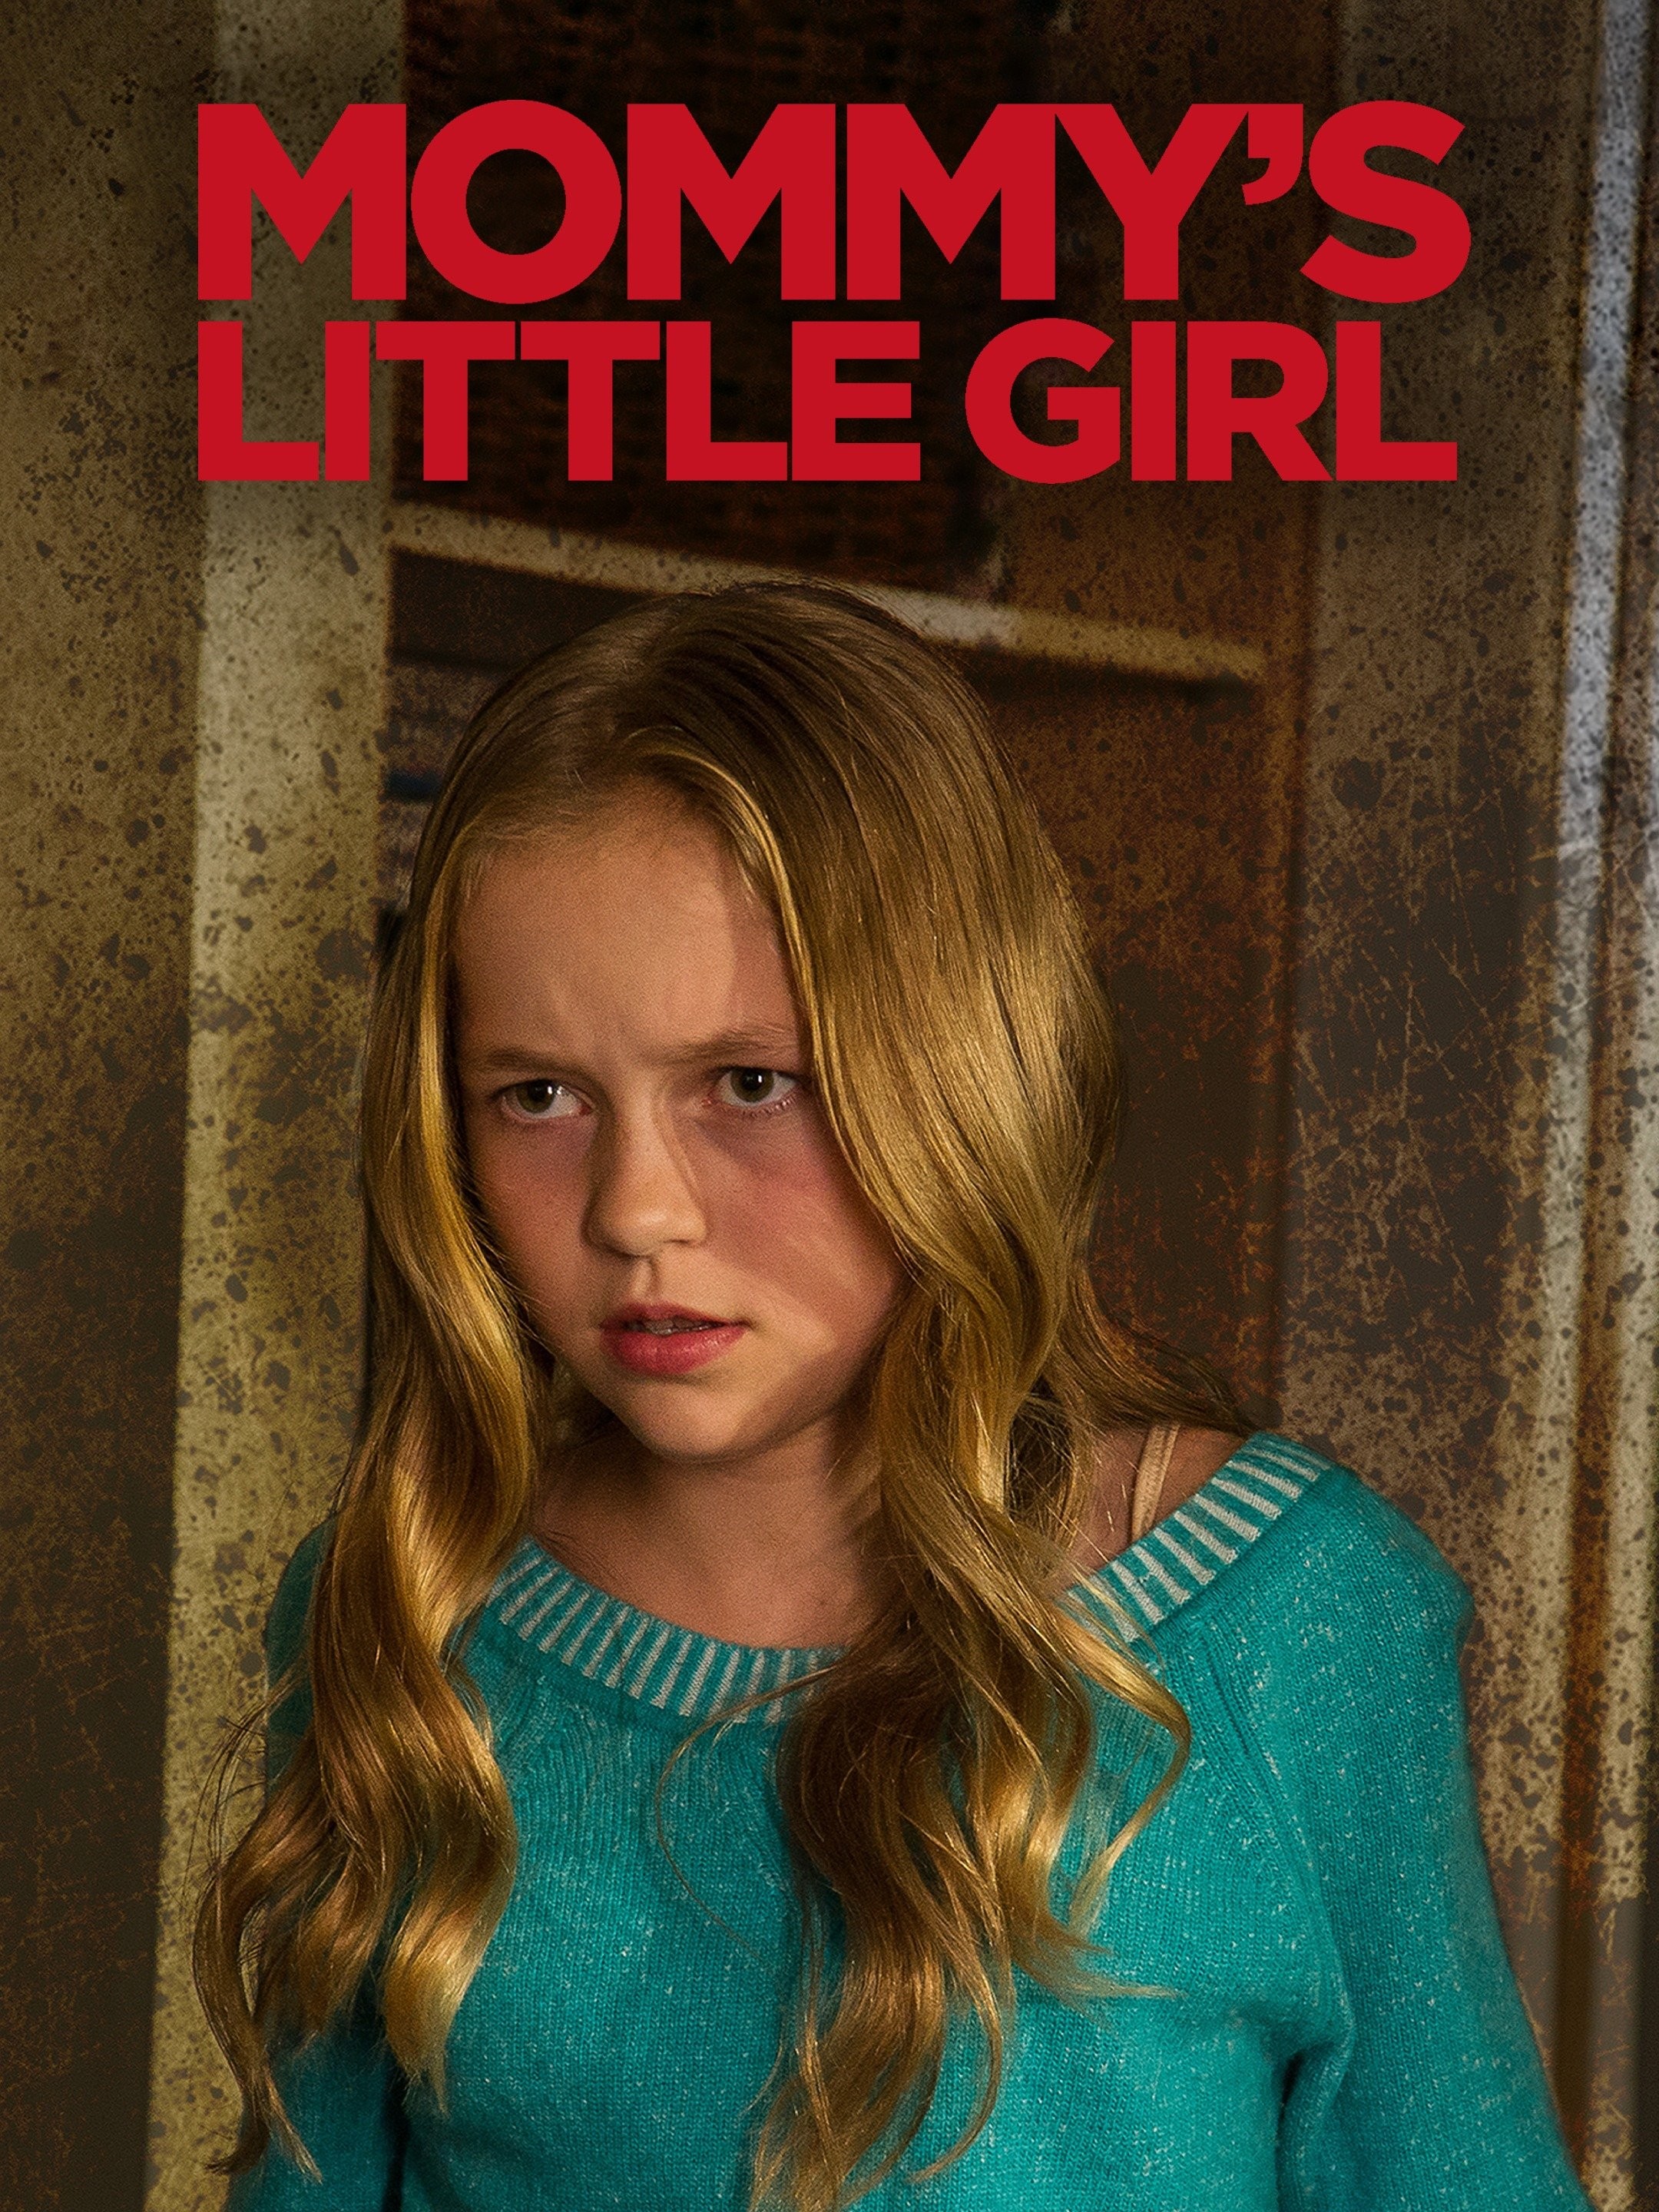 Little Girl (2020)